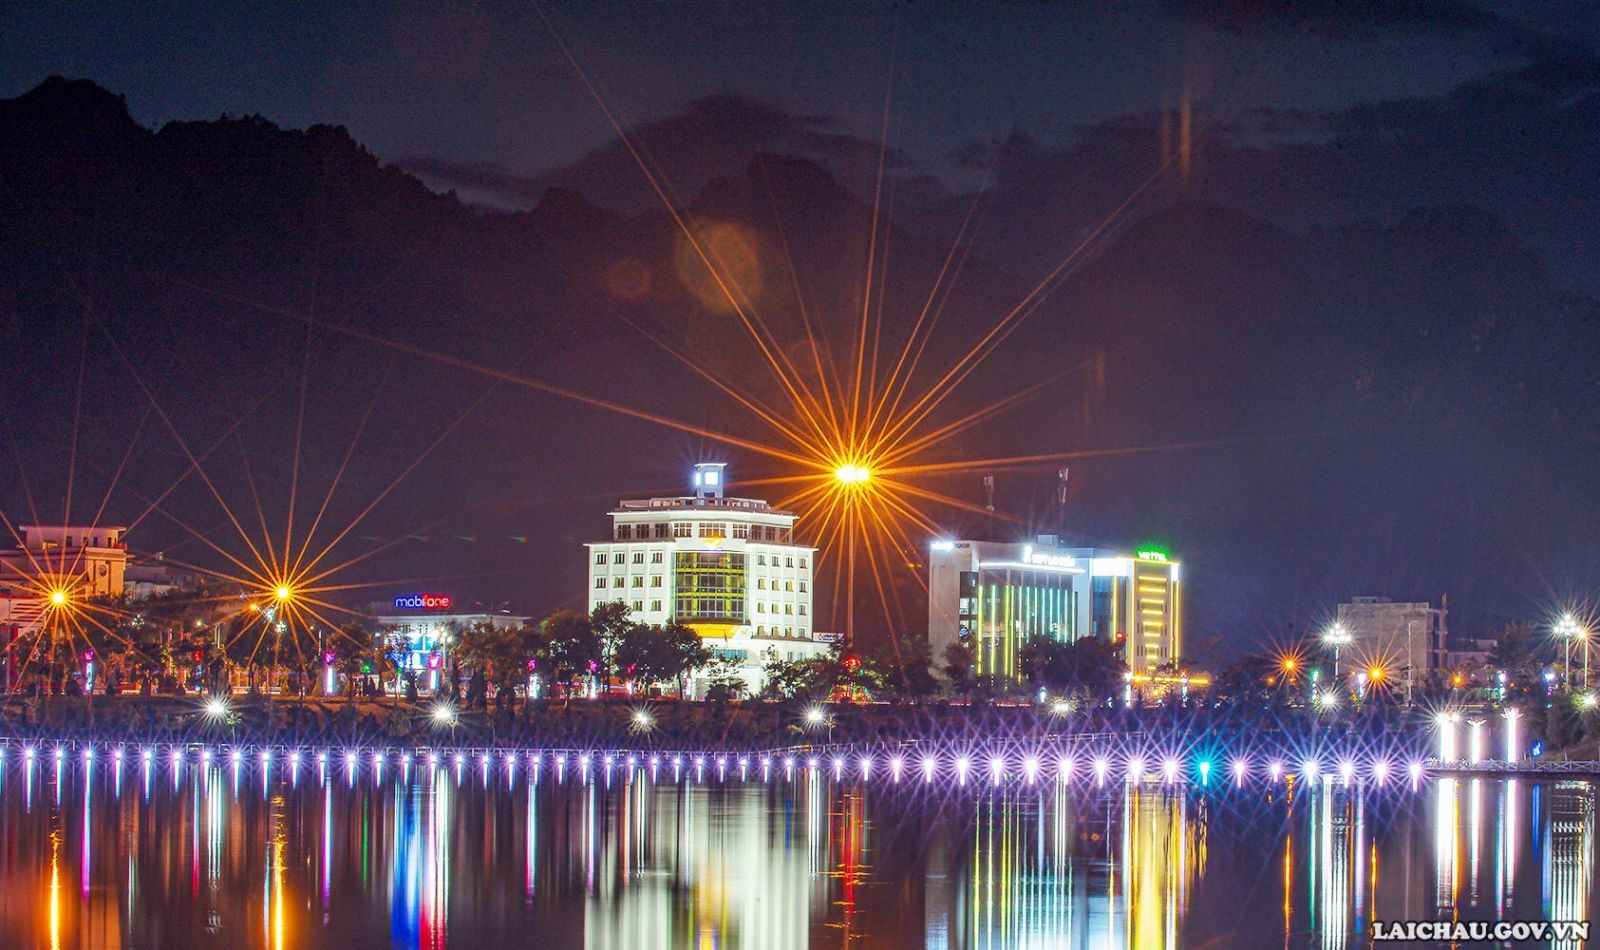 Khi thành phố lên đèn sáng rực một góc hồ Hạ, tạo lên bức tranh sơn thủy hữu tình. (Ảnh: Bùi Tiến Dũng)